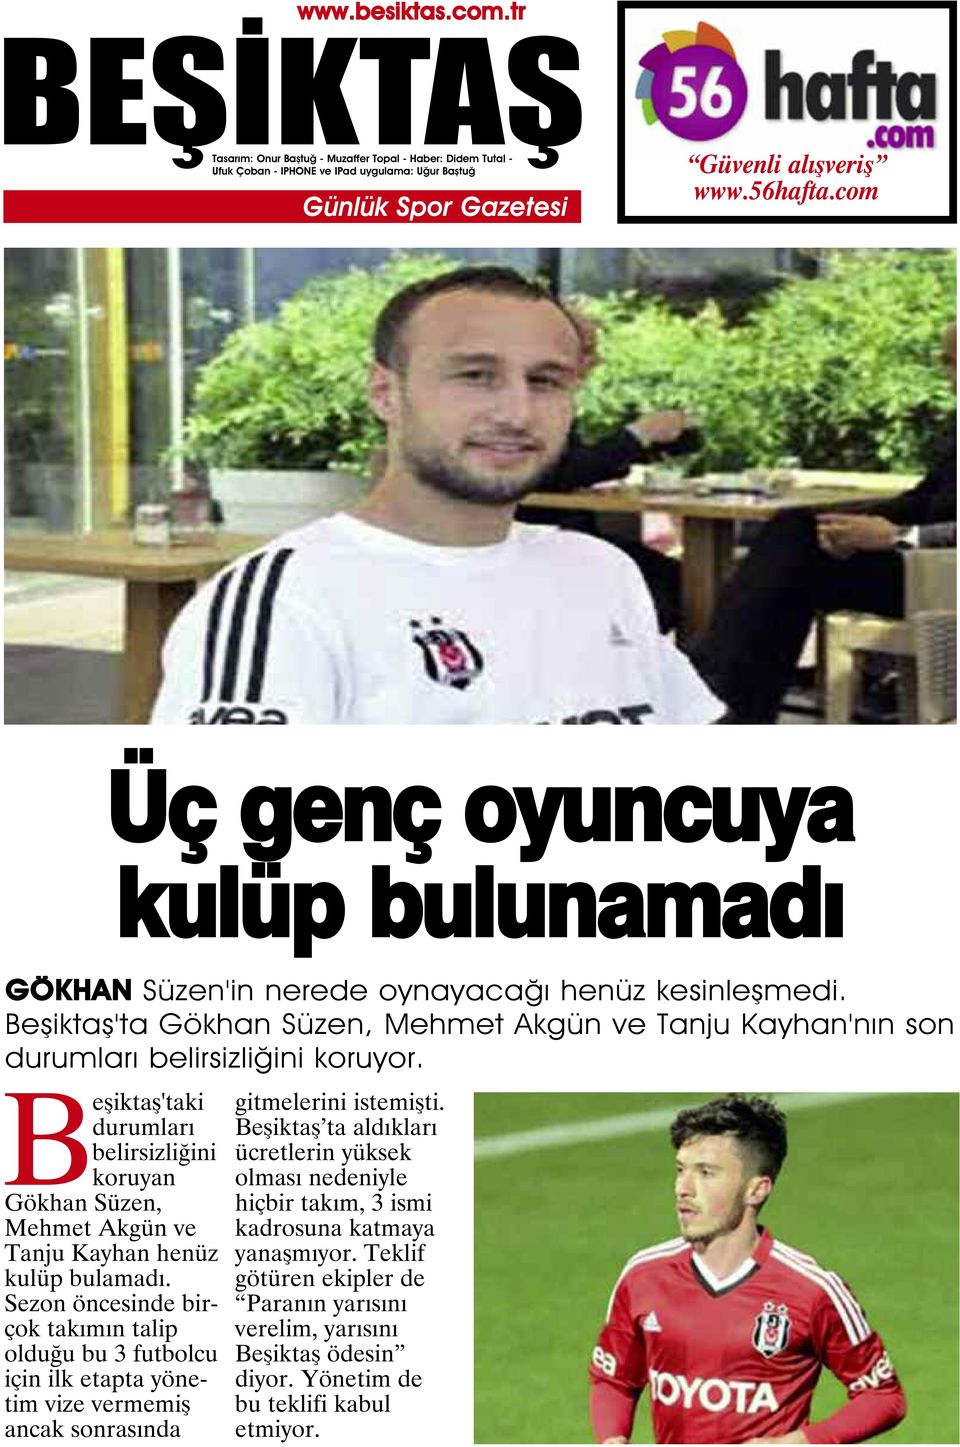 Beşiktaş'taki durumları belirsizliğini koruyan Gökhan Süzen, Mehmet Akgün ve Tanju Kayhan henüz kulüp bulamadı.